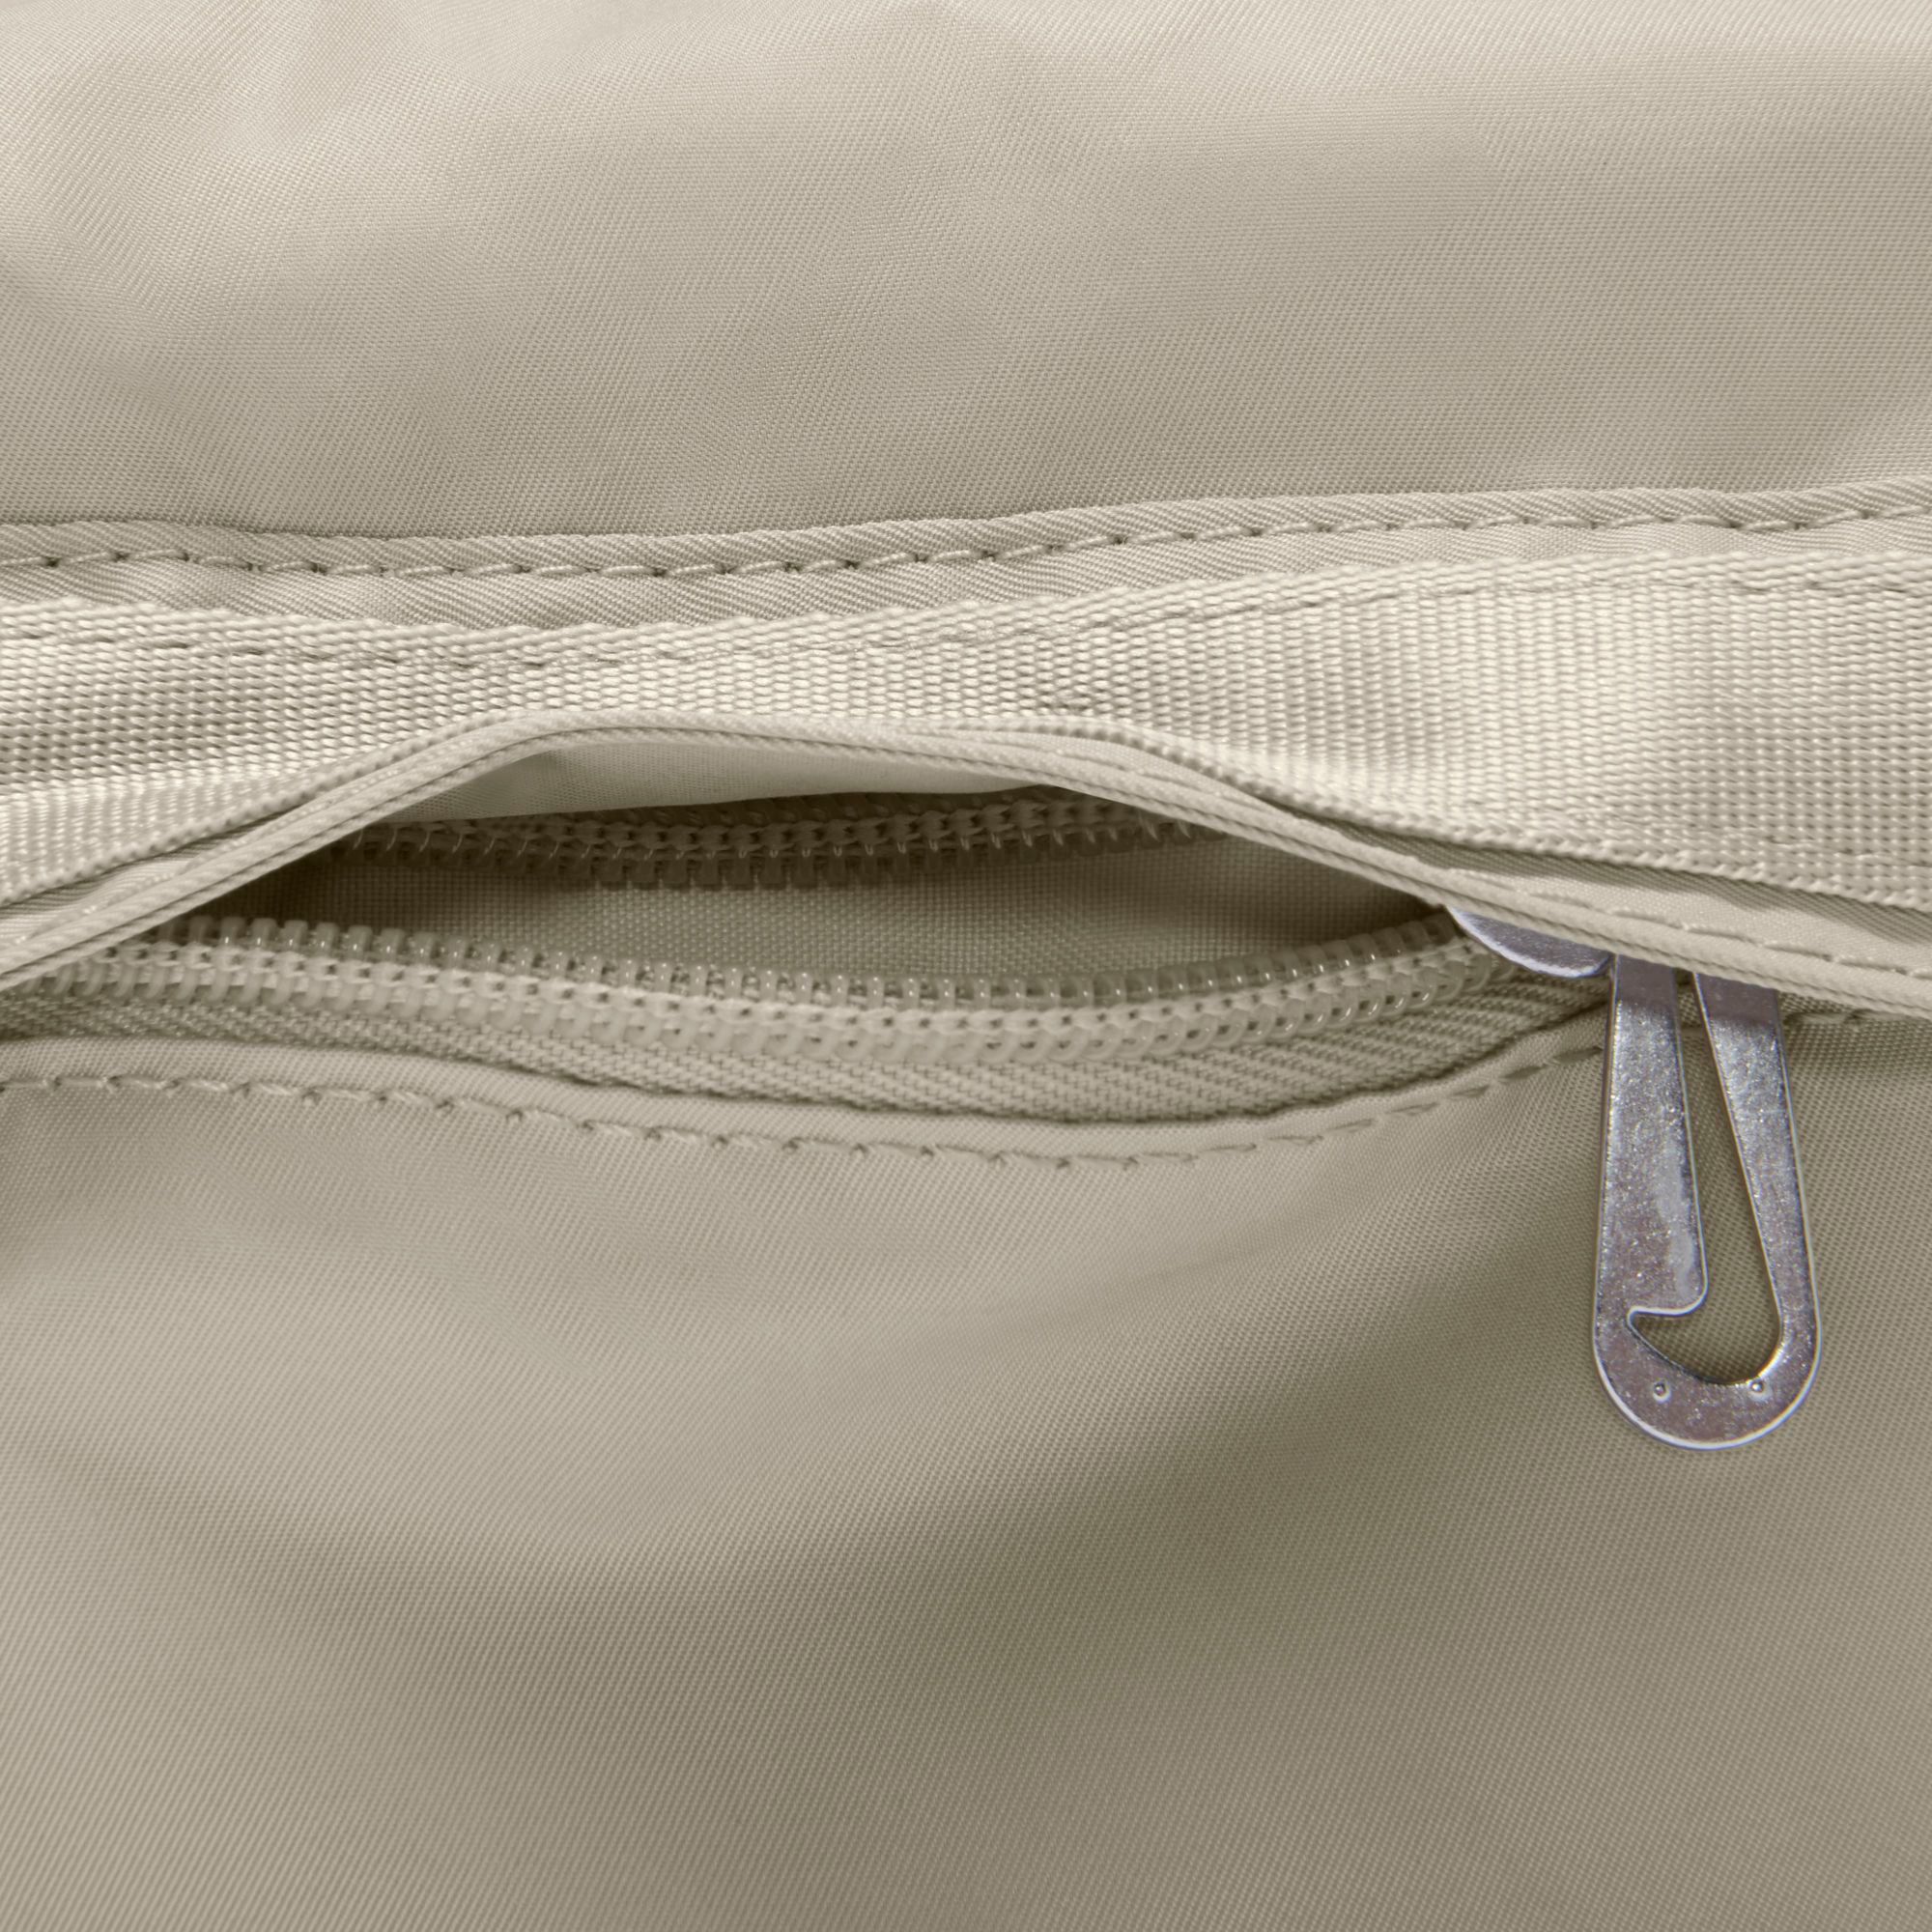 NIKE NSW Women's Futura LUXE Pouch Crossbody Shoulder Bag CW9304 410  FASHION